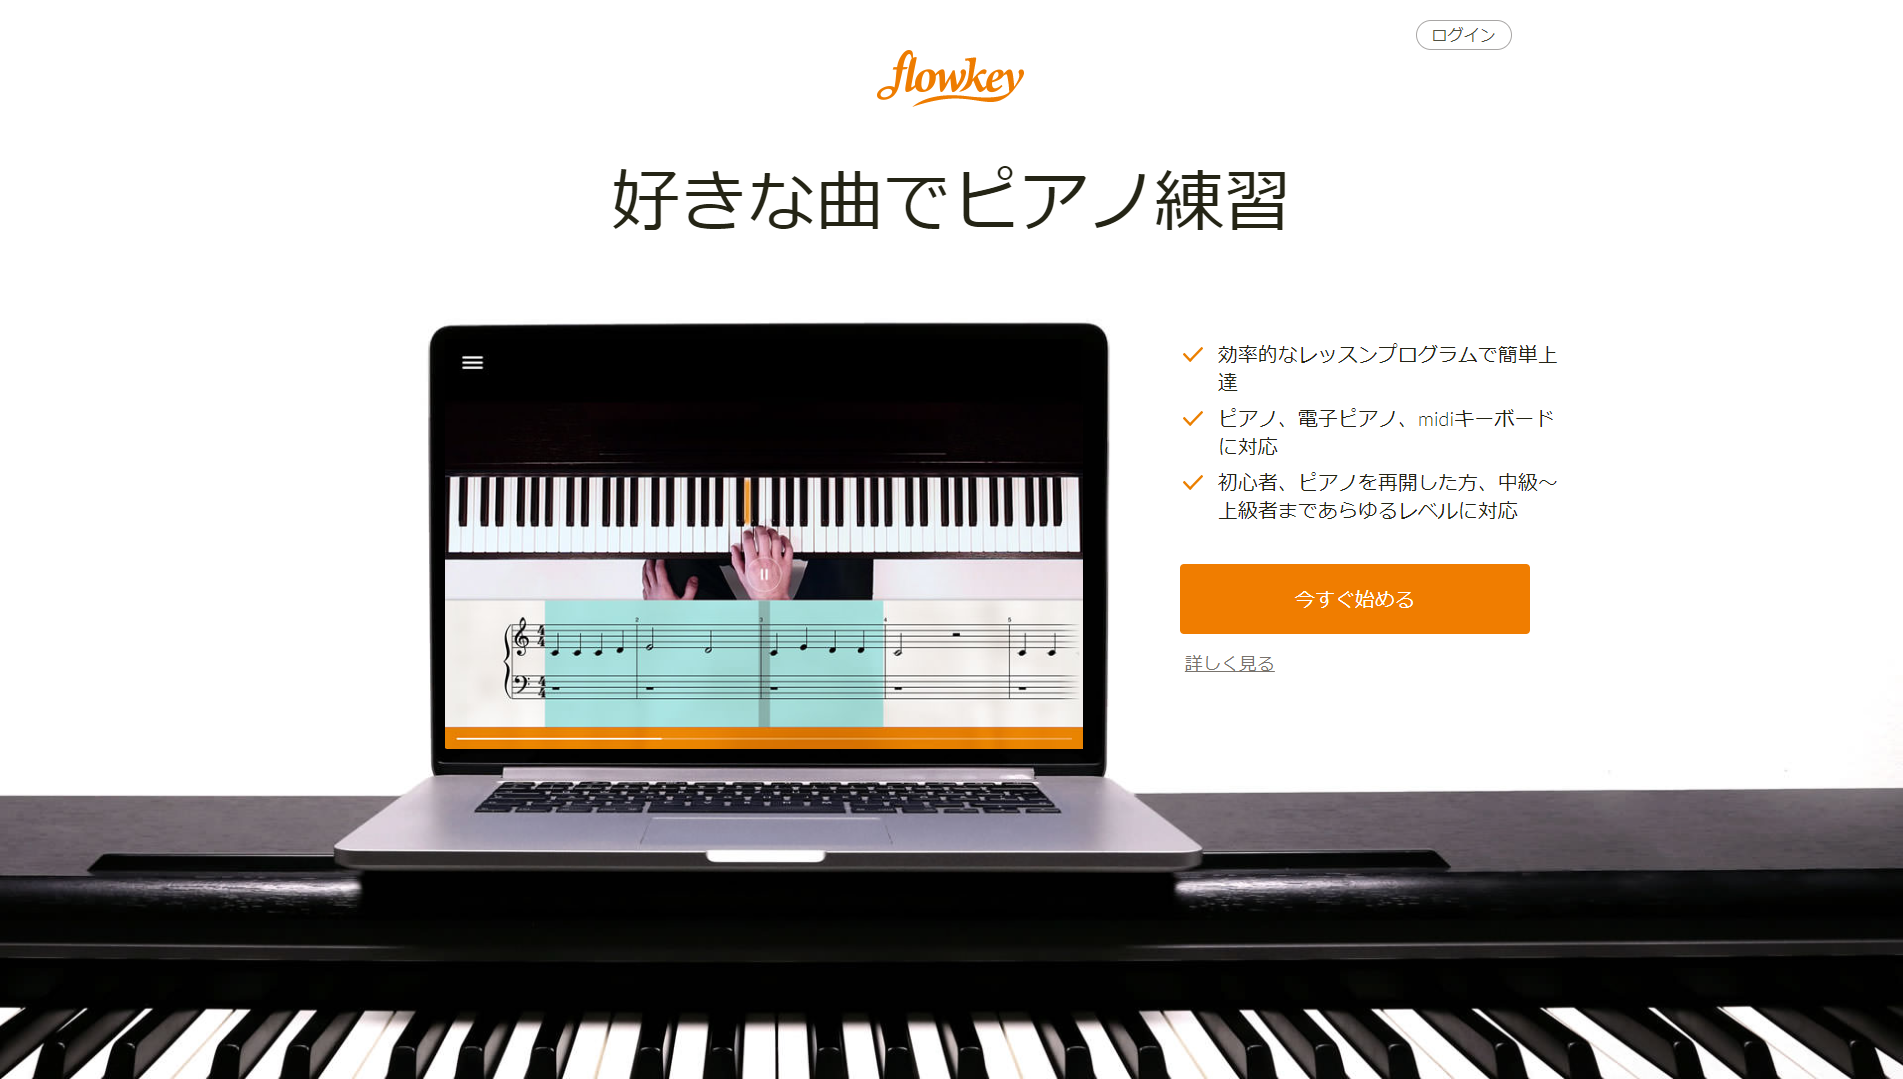 家にいながらピアノのレッスン Midiキーボードとpc スマホでできるドイツ生まれのピアノ学習アプリ Flowkey 藤本健の Dtmステーション